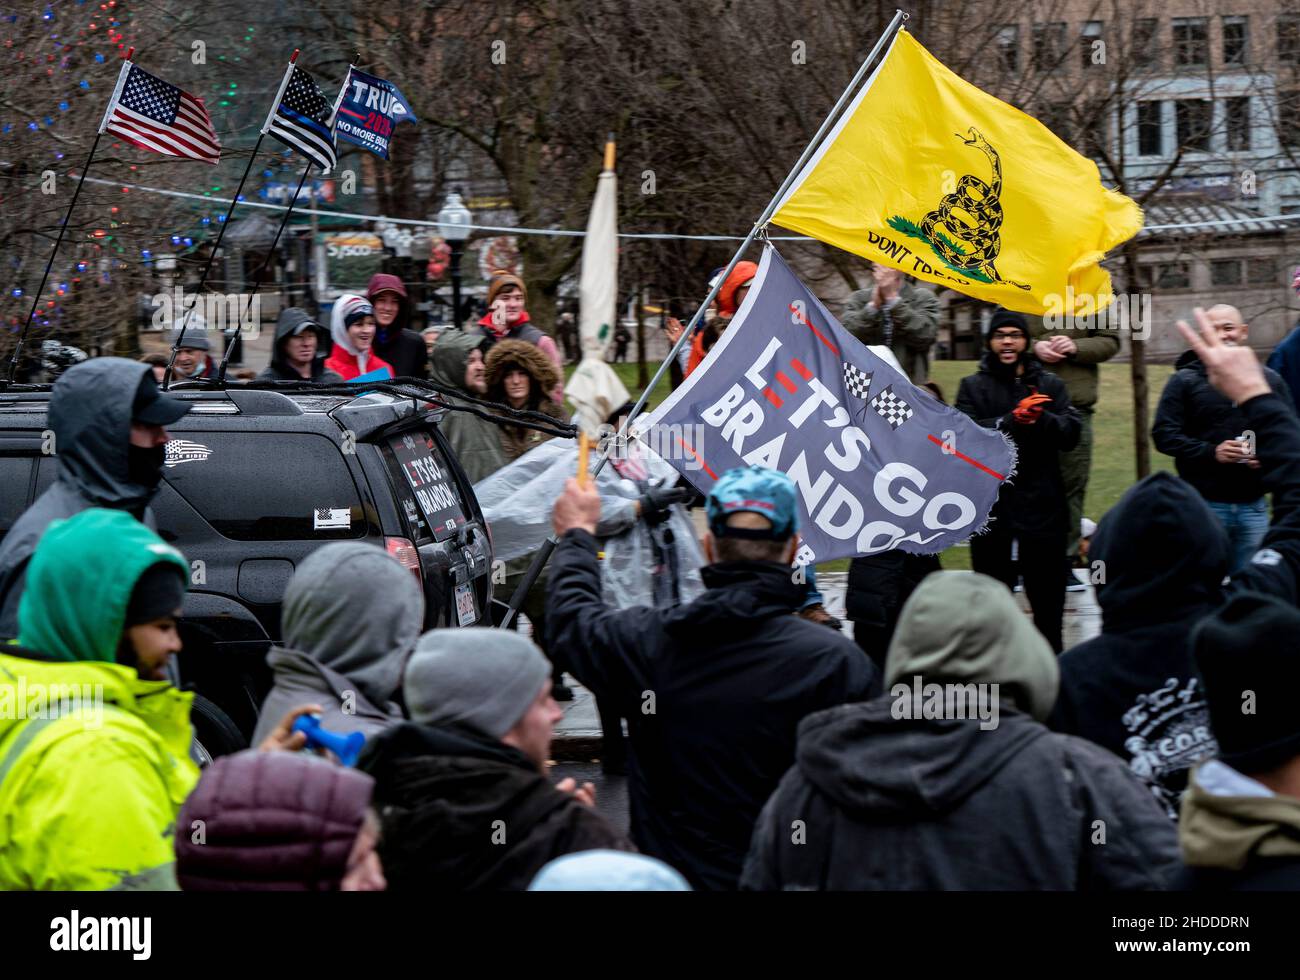 Boston, Massachusetts, États-Unis.5 janvier 2022, Boston, Massachusetts, États-Unis : les manifestants applaudissent à une voiture avec le drapeau de Brandon lors d'une manifestation contre les mandats de vaccination contre la coronavirus (COVID-19) à Boston.Credit: Keiko Hiromi/AFLO/Alay Live News Banque D'Images